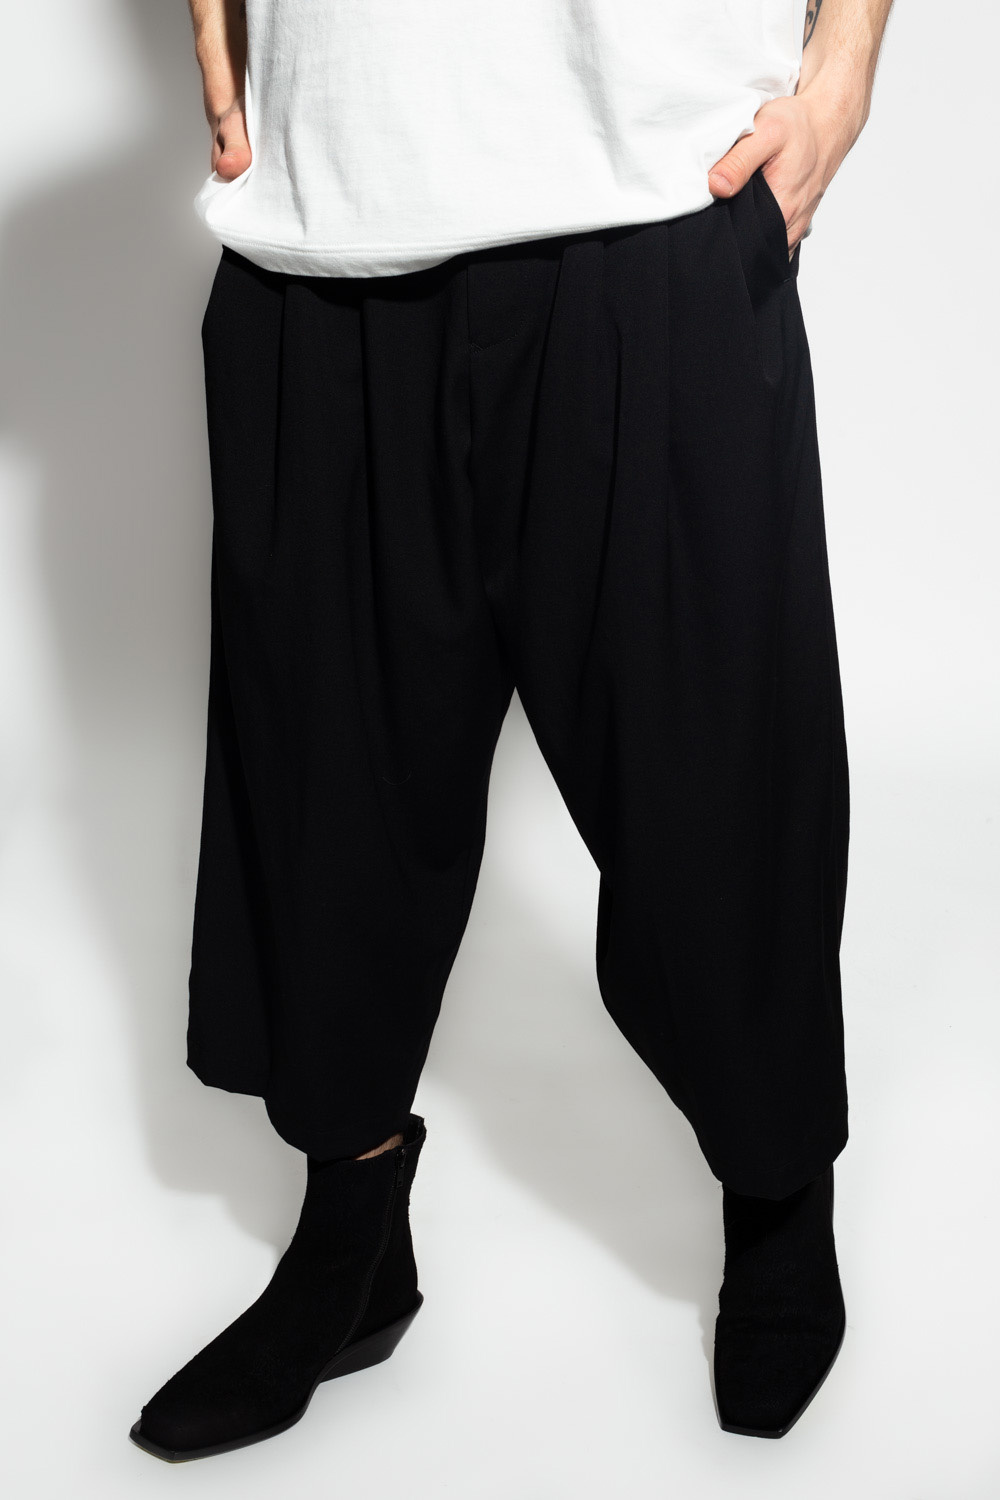 Yohji Yamamoto SS96 Trousers  Grailed  Yohji yamamoto Pattern fashion  Jumpsuit pattern